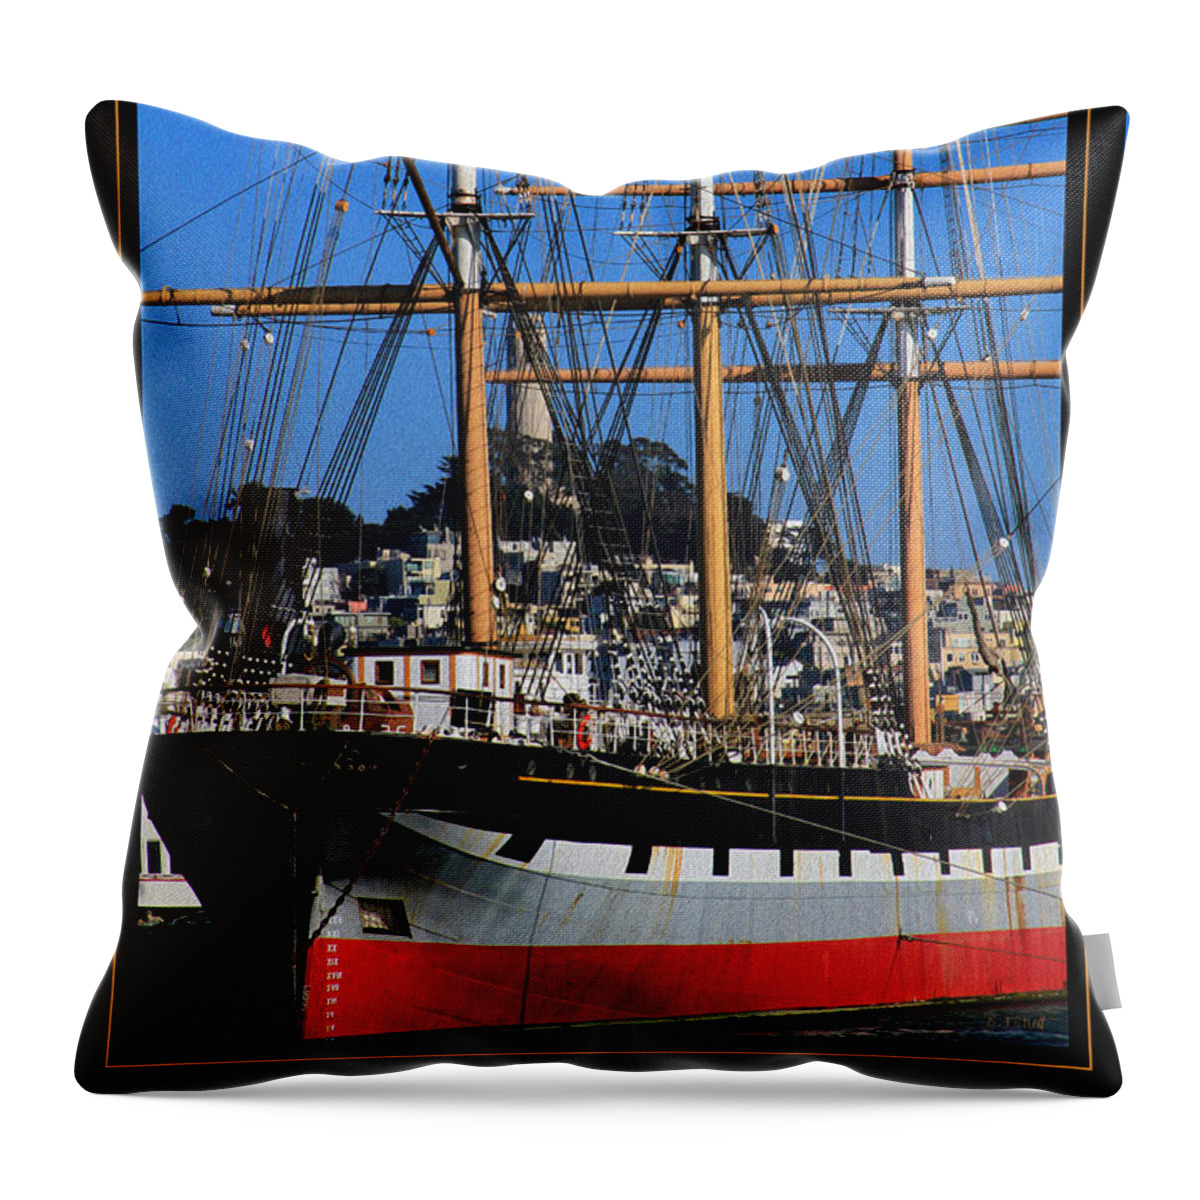 Bonnie Follett Throw Pillow featuring the photograph The ship Balclutha by Bonnie Follett